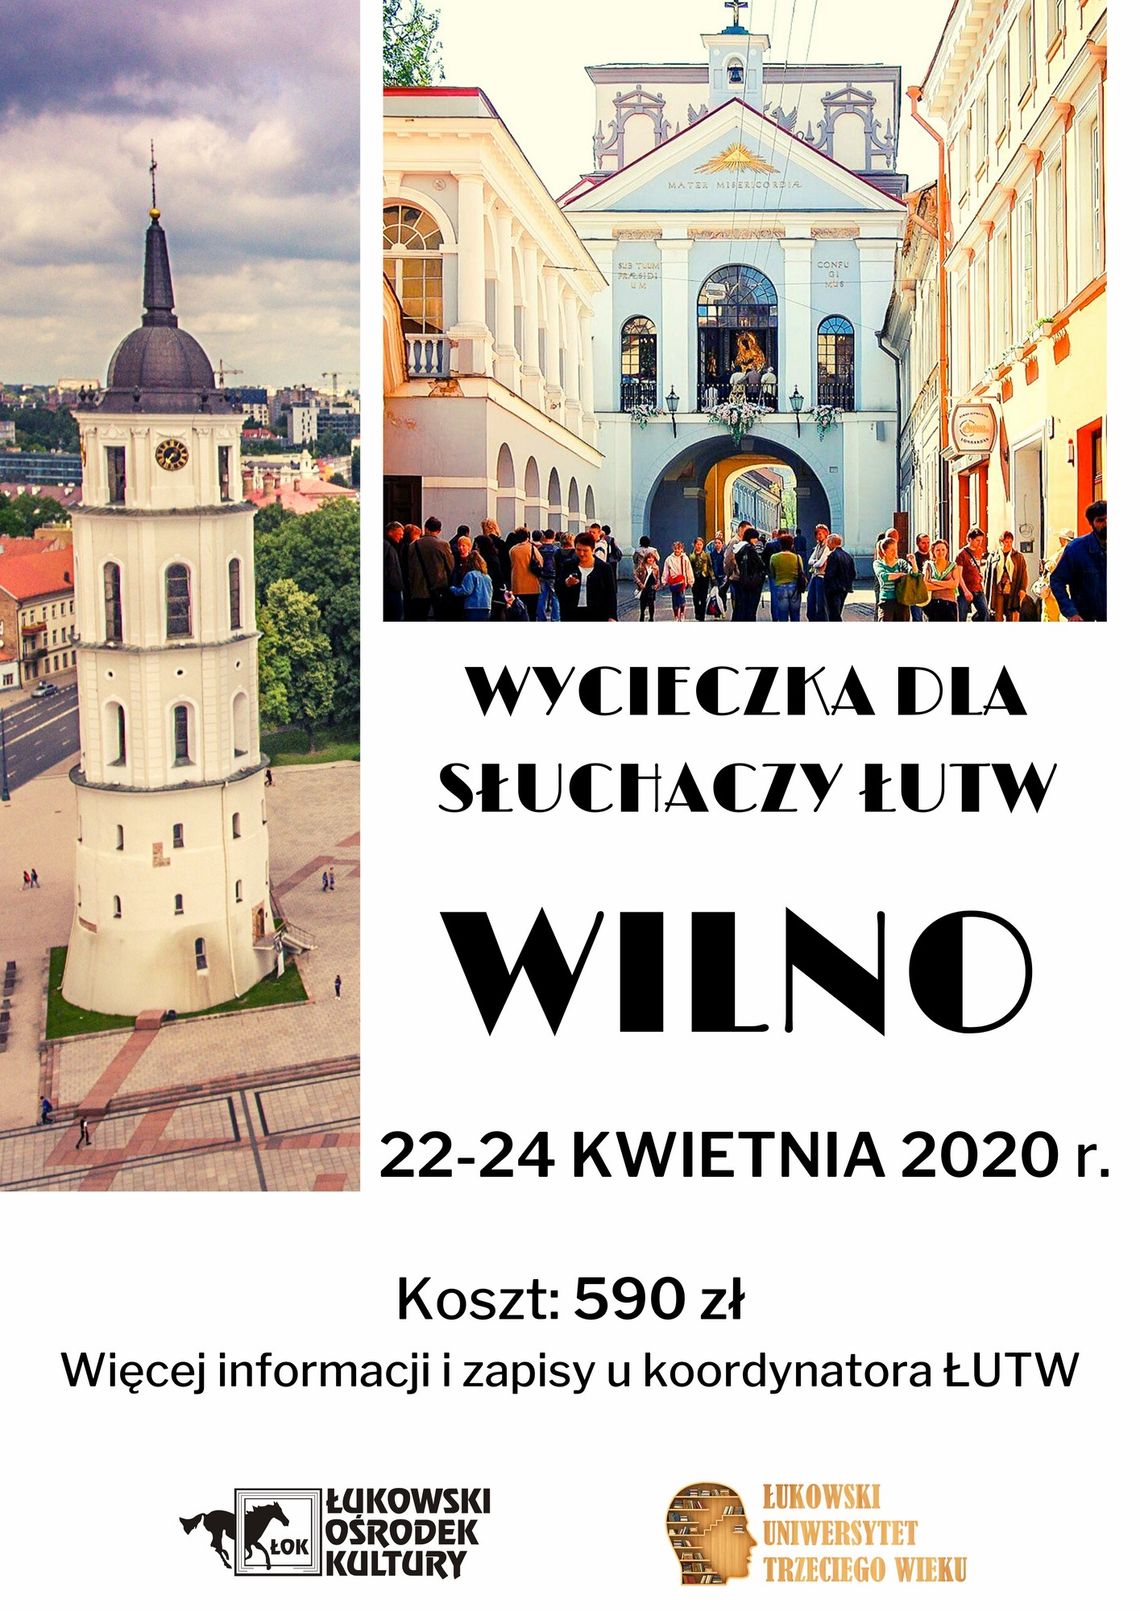 Wycieczka dla słuchaczy ŁUTW do Wilna /22-24 kwietnia 2020